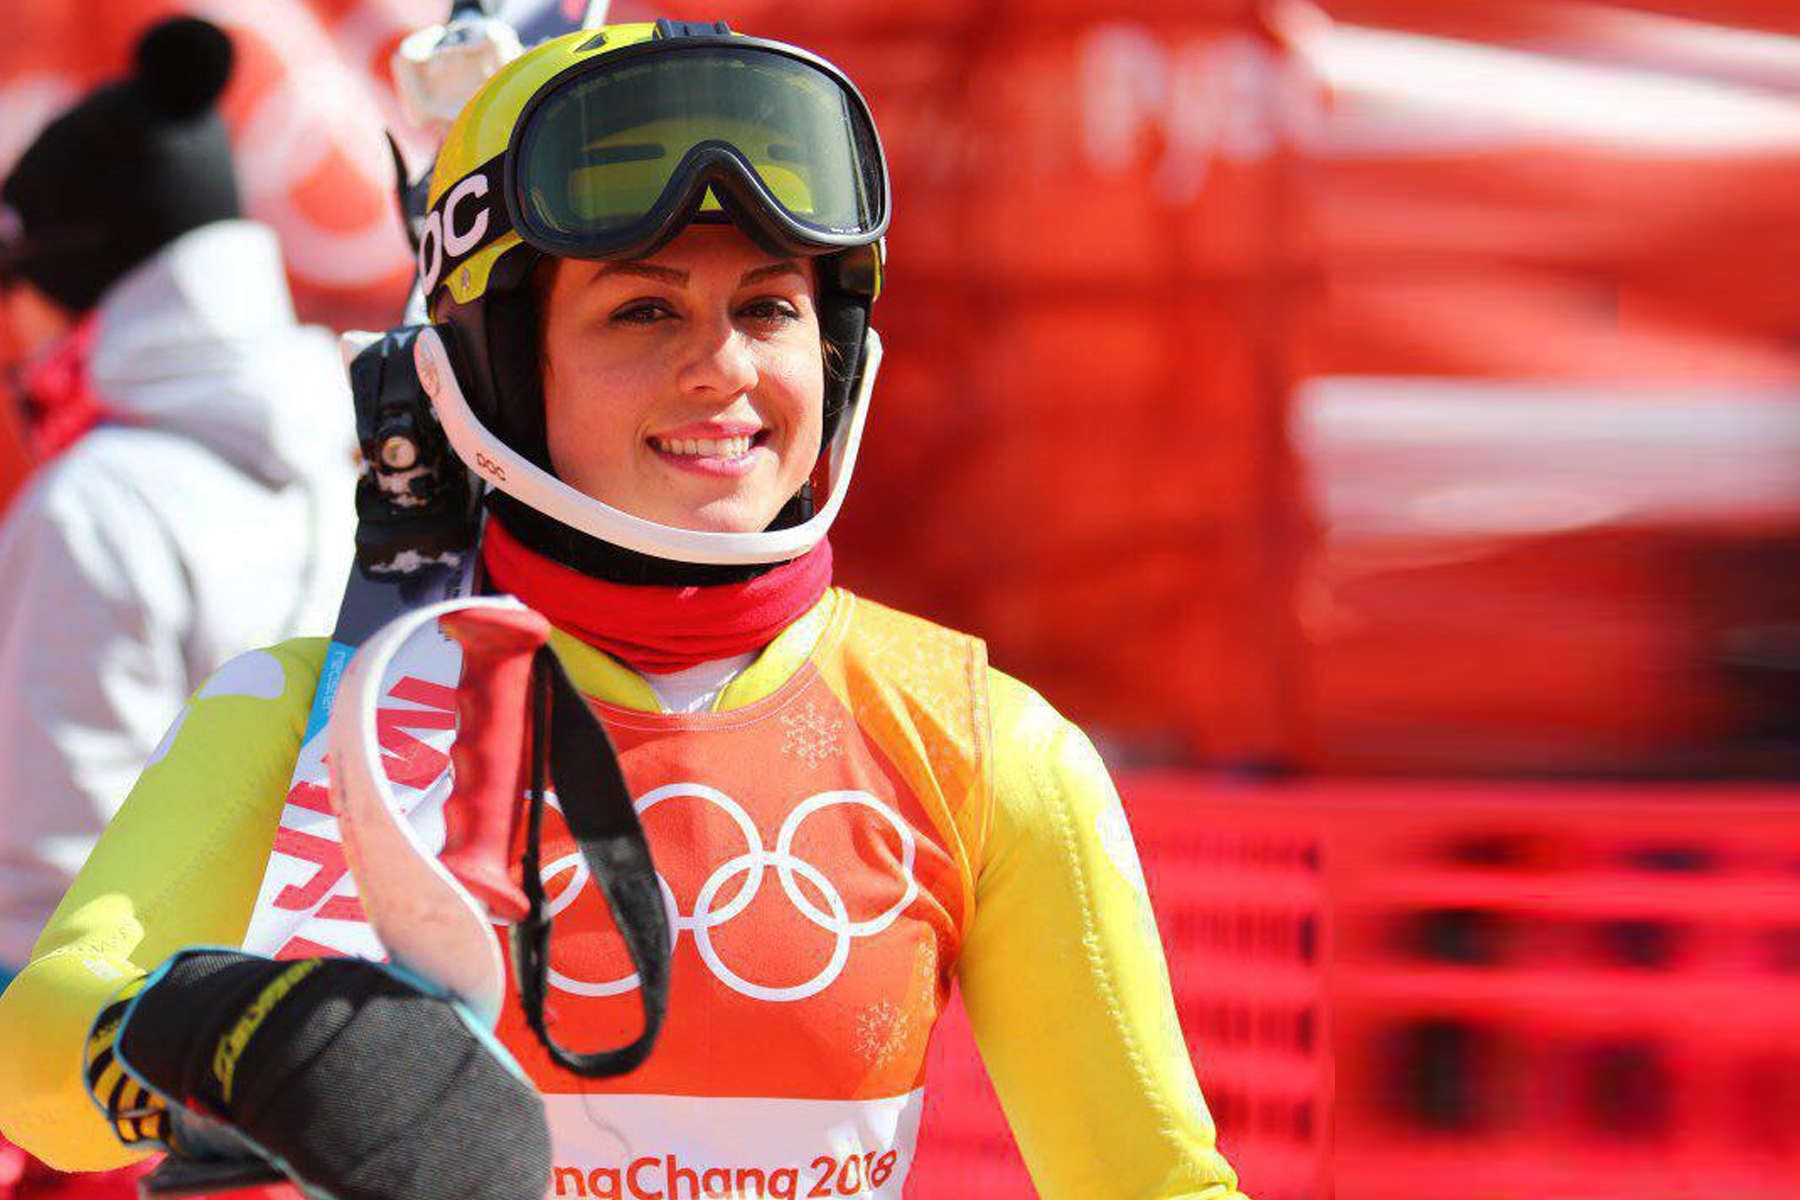 سمیرا زرگری ، سرمربی تیم ملی اسکی آلپاین زنان توسط شوهرش ممنوع الخروج شد 